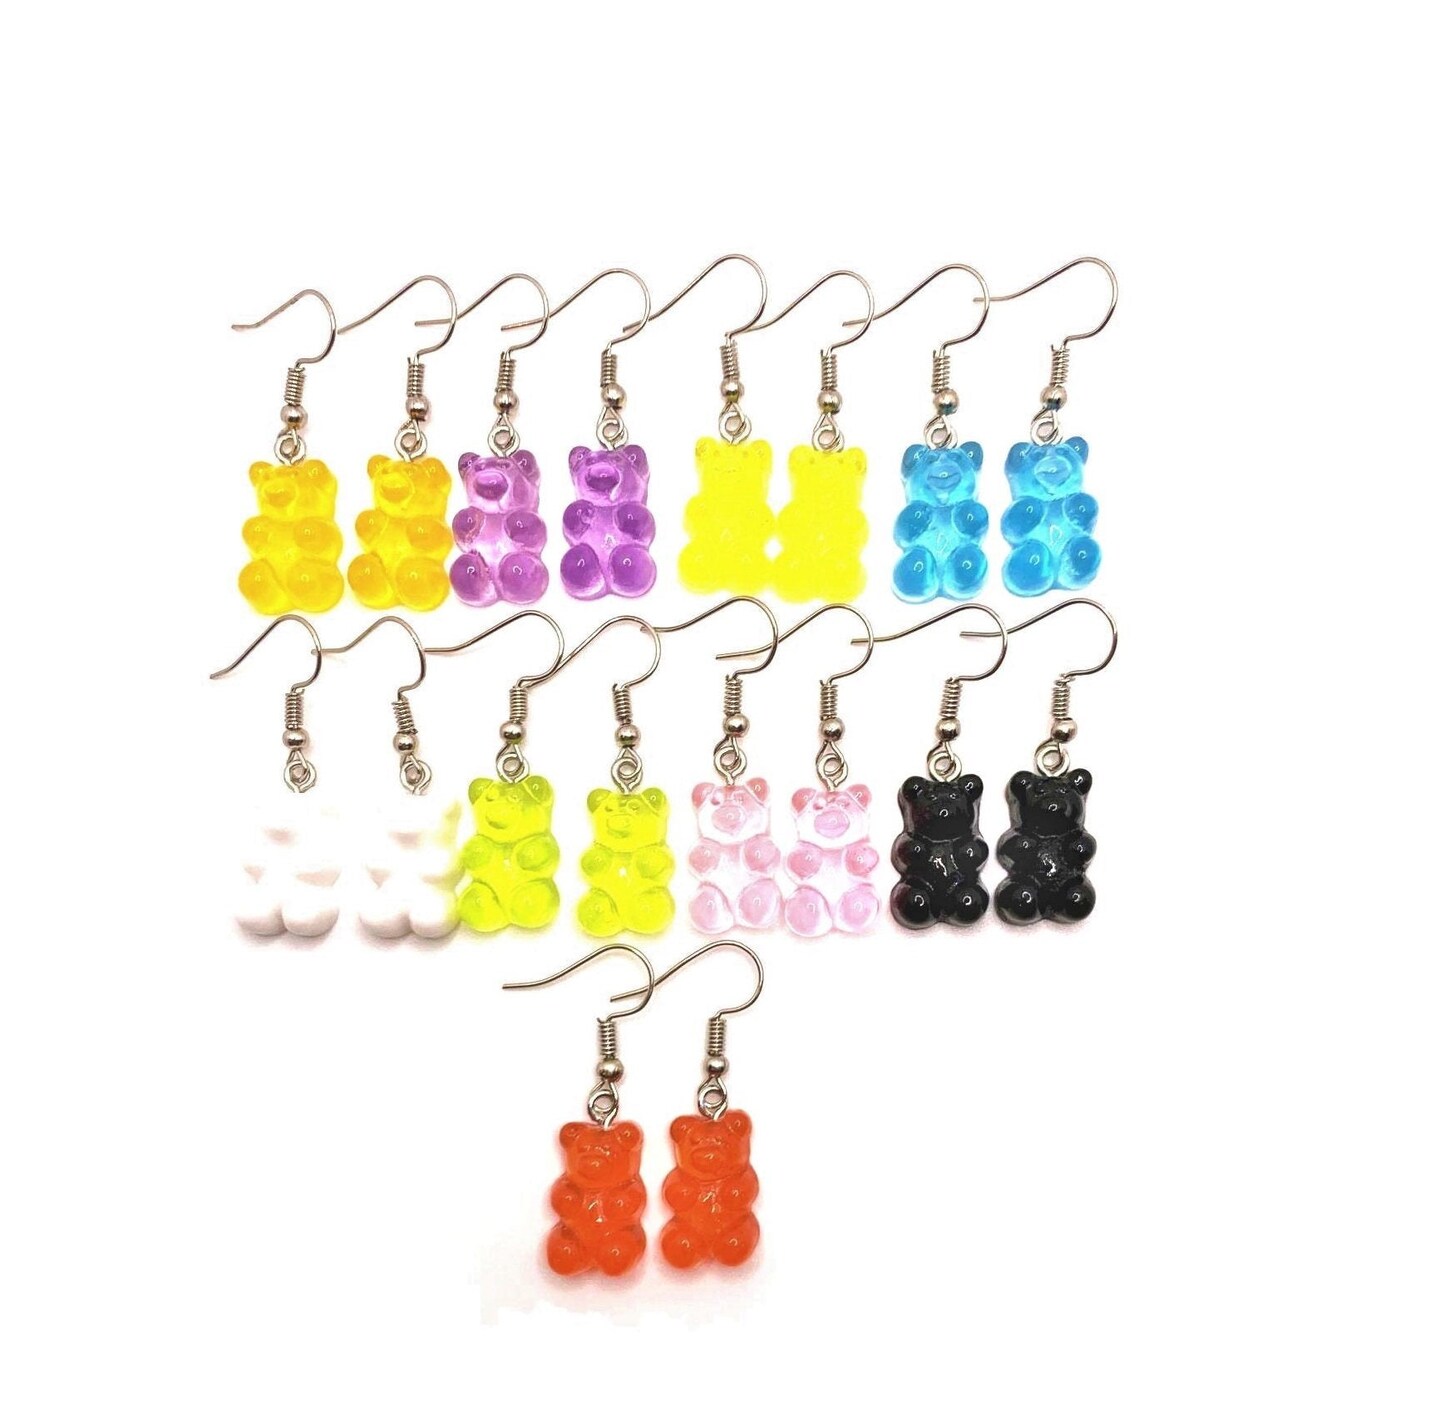 Full Set of Novelty Gummy Bear Earrings - 9 colors!